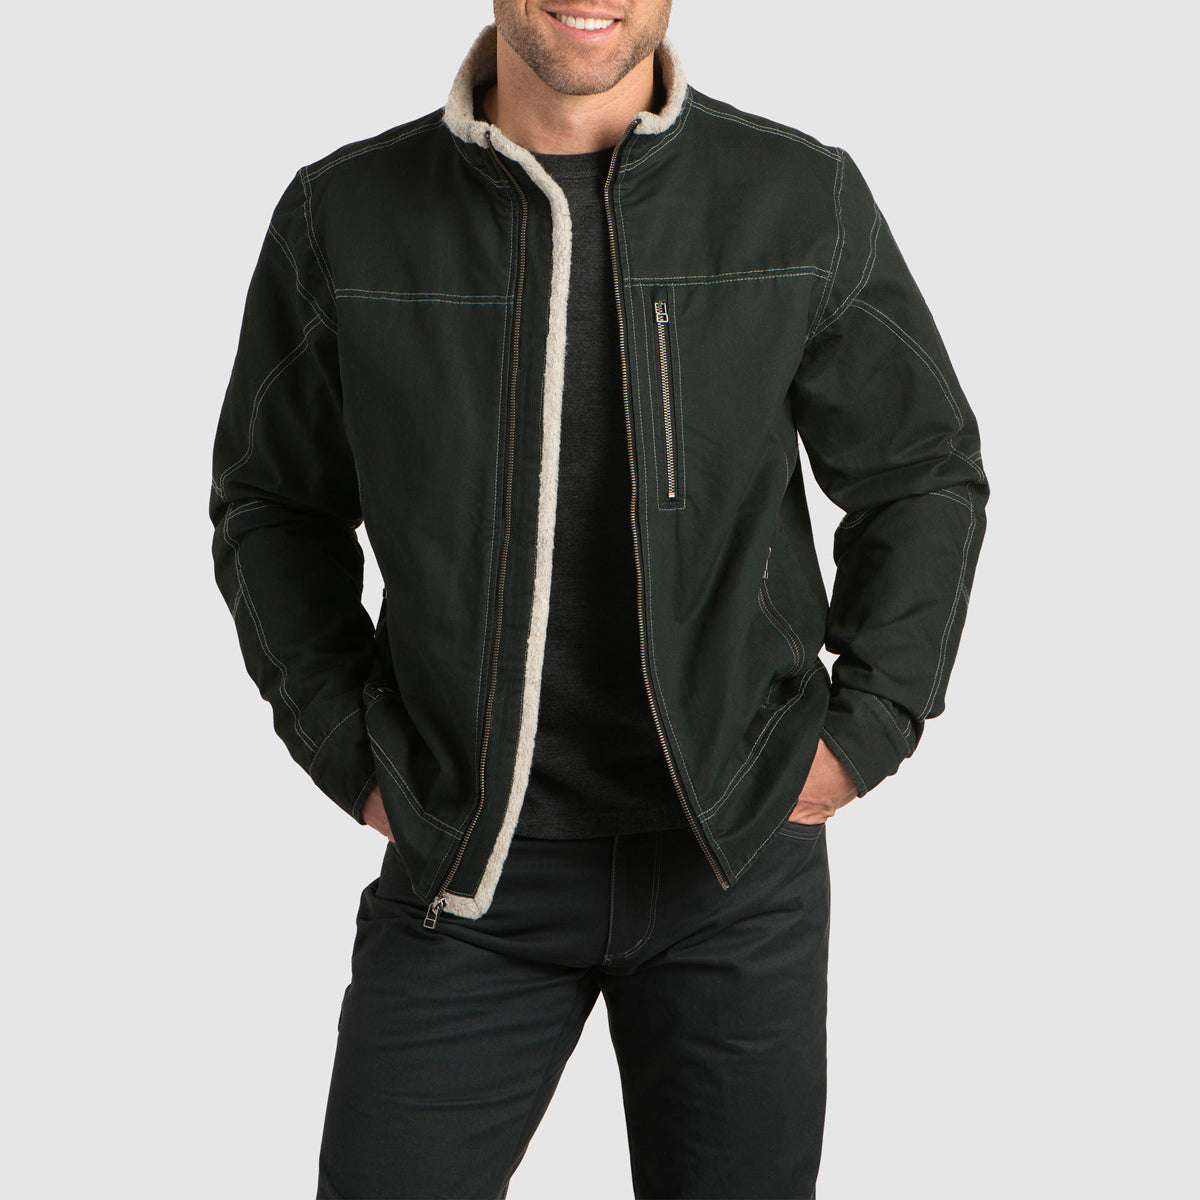 Burr™ Jacket in Men's Outerwear